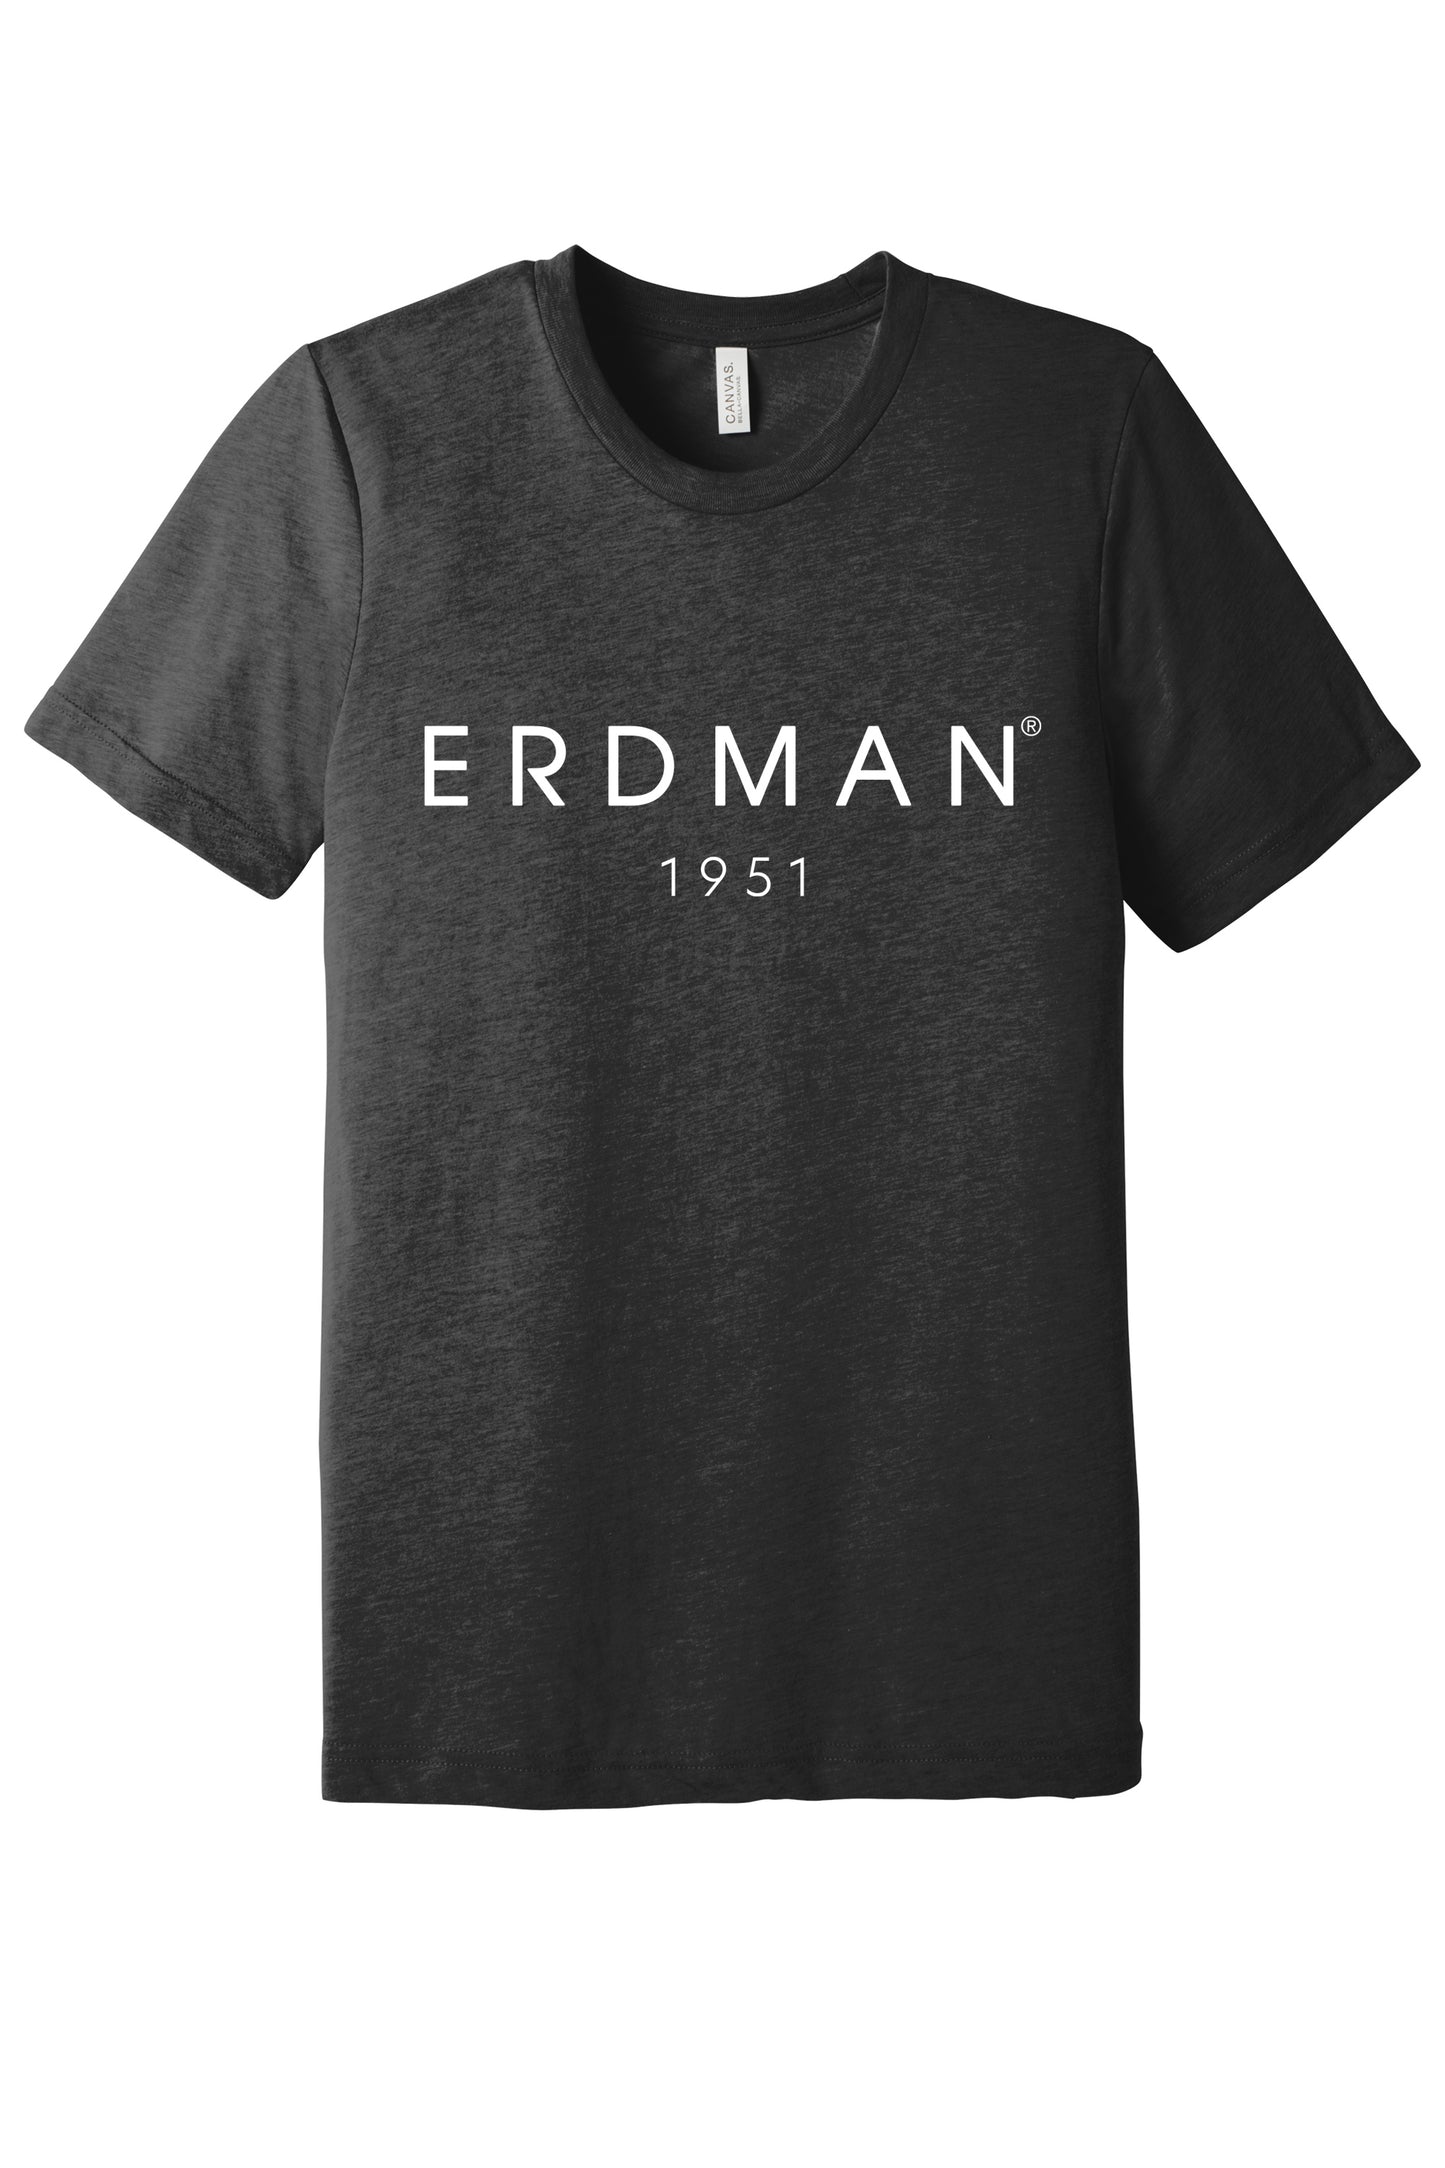 Erdman 1951 — t-shirt